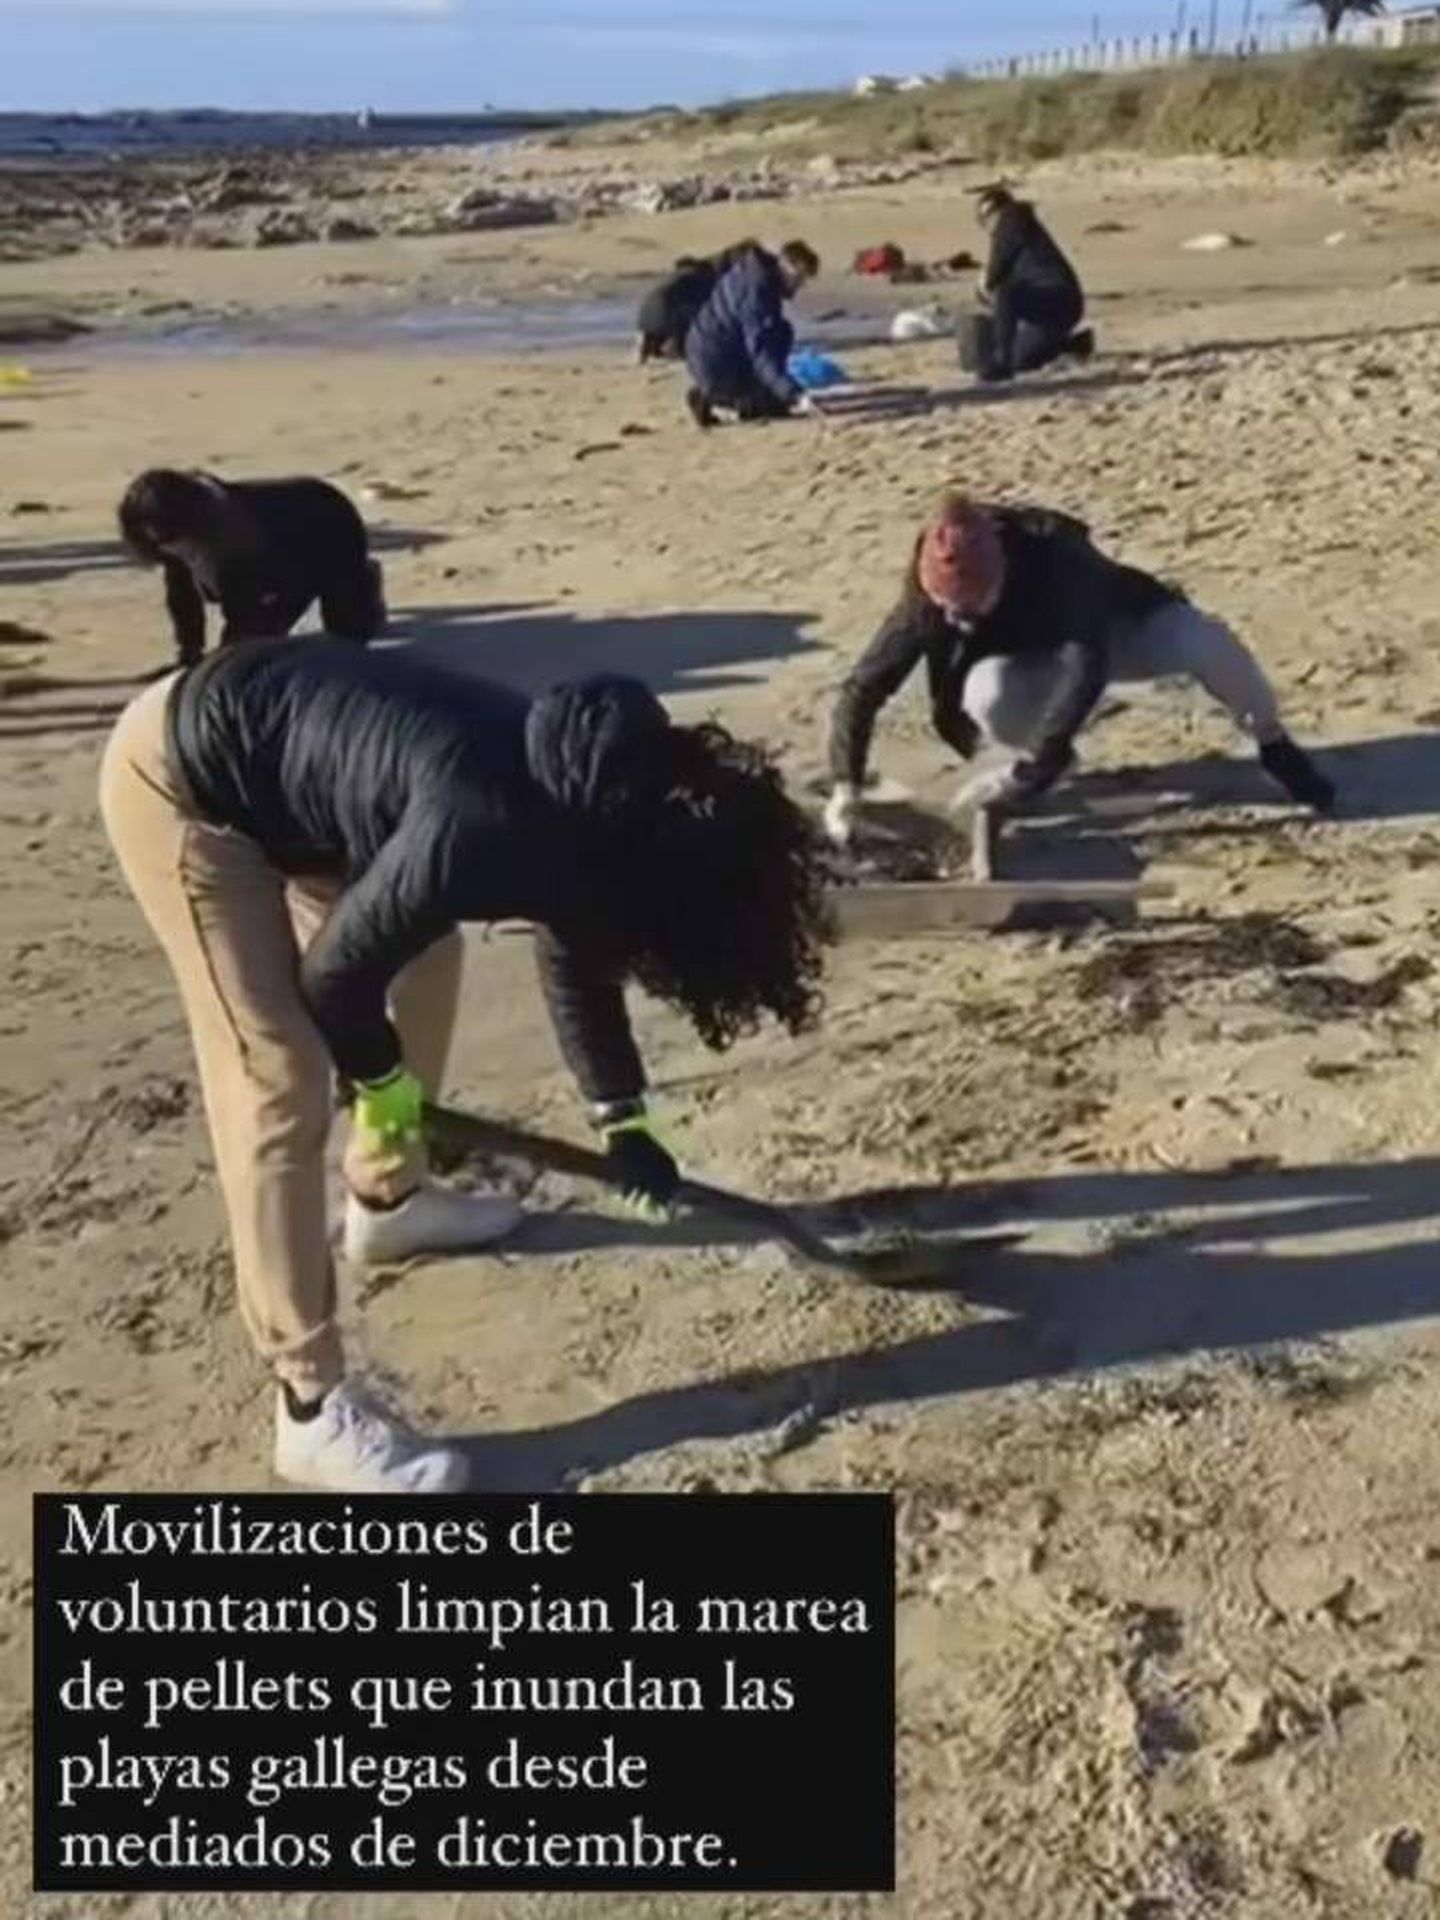 Voluntarios limpian la marea de pellets. (Instagram/@patriciapardo_tv)